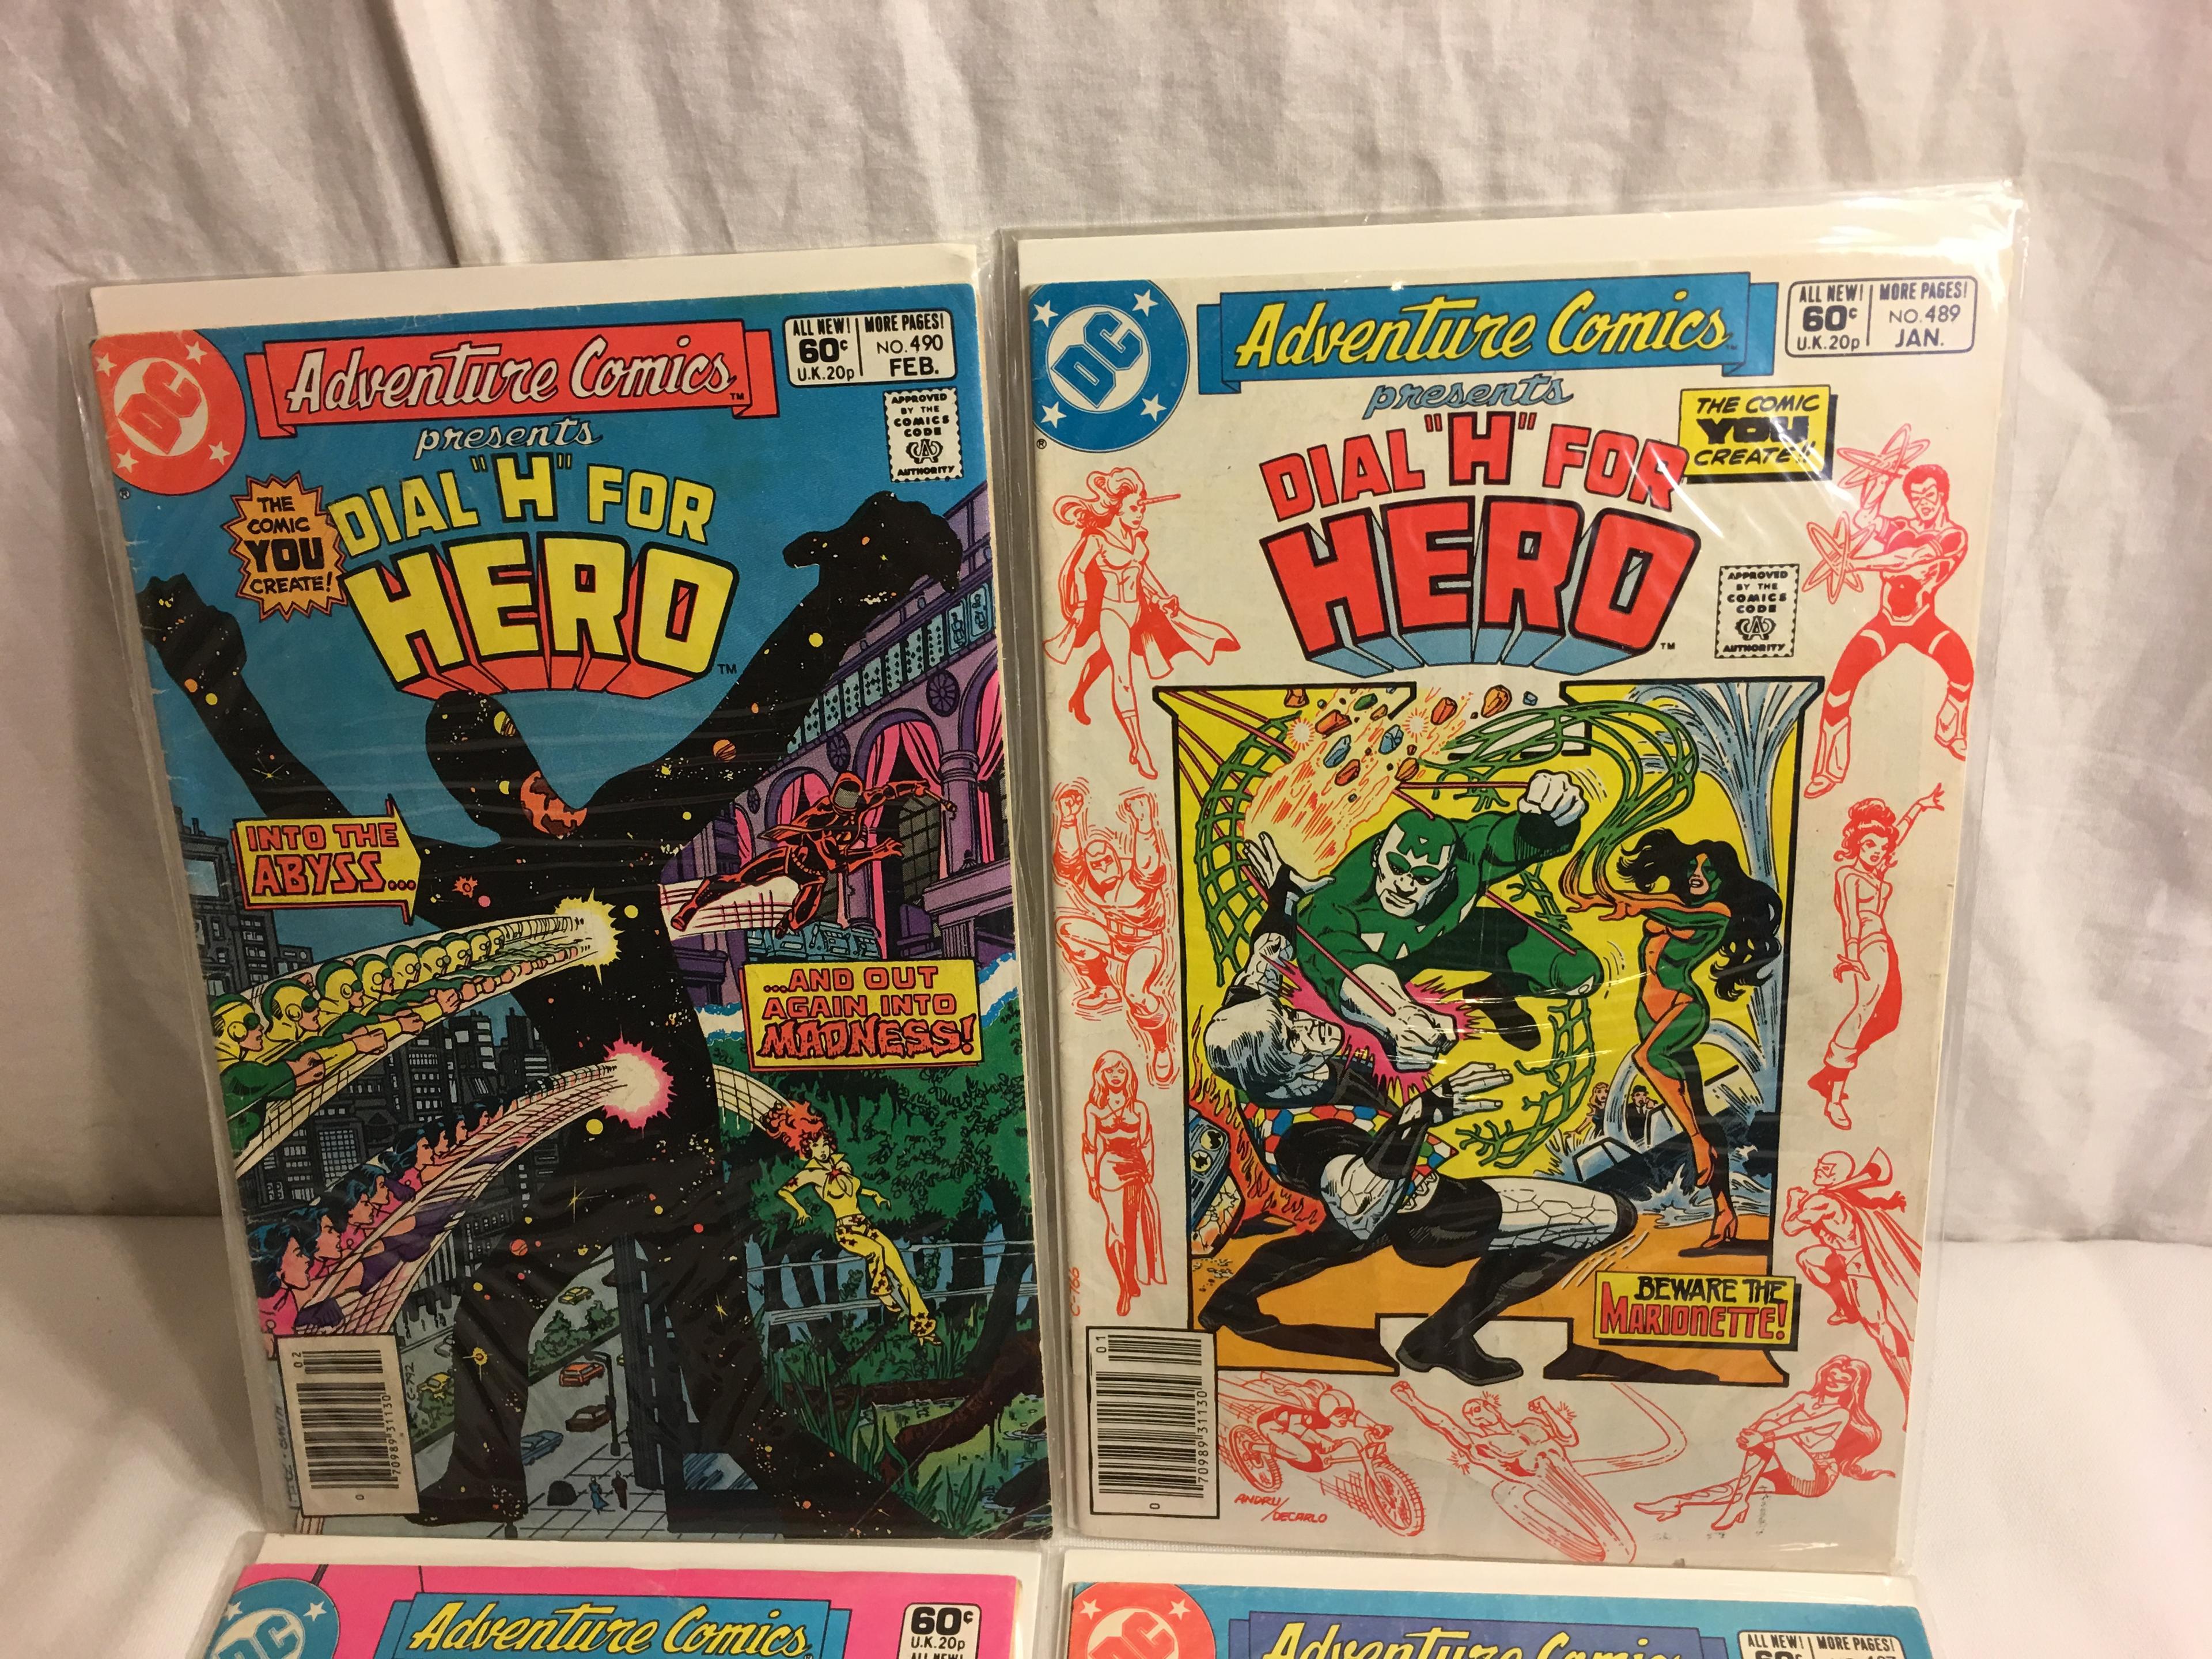 Lot of 4 Pcs. Vinatge DC Adventure Comics Presents Dial "H" For Hero No.487.488.489.490